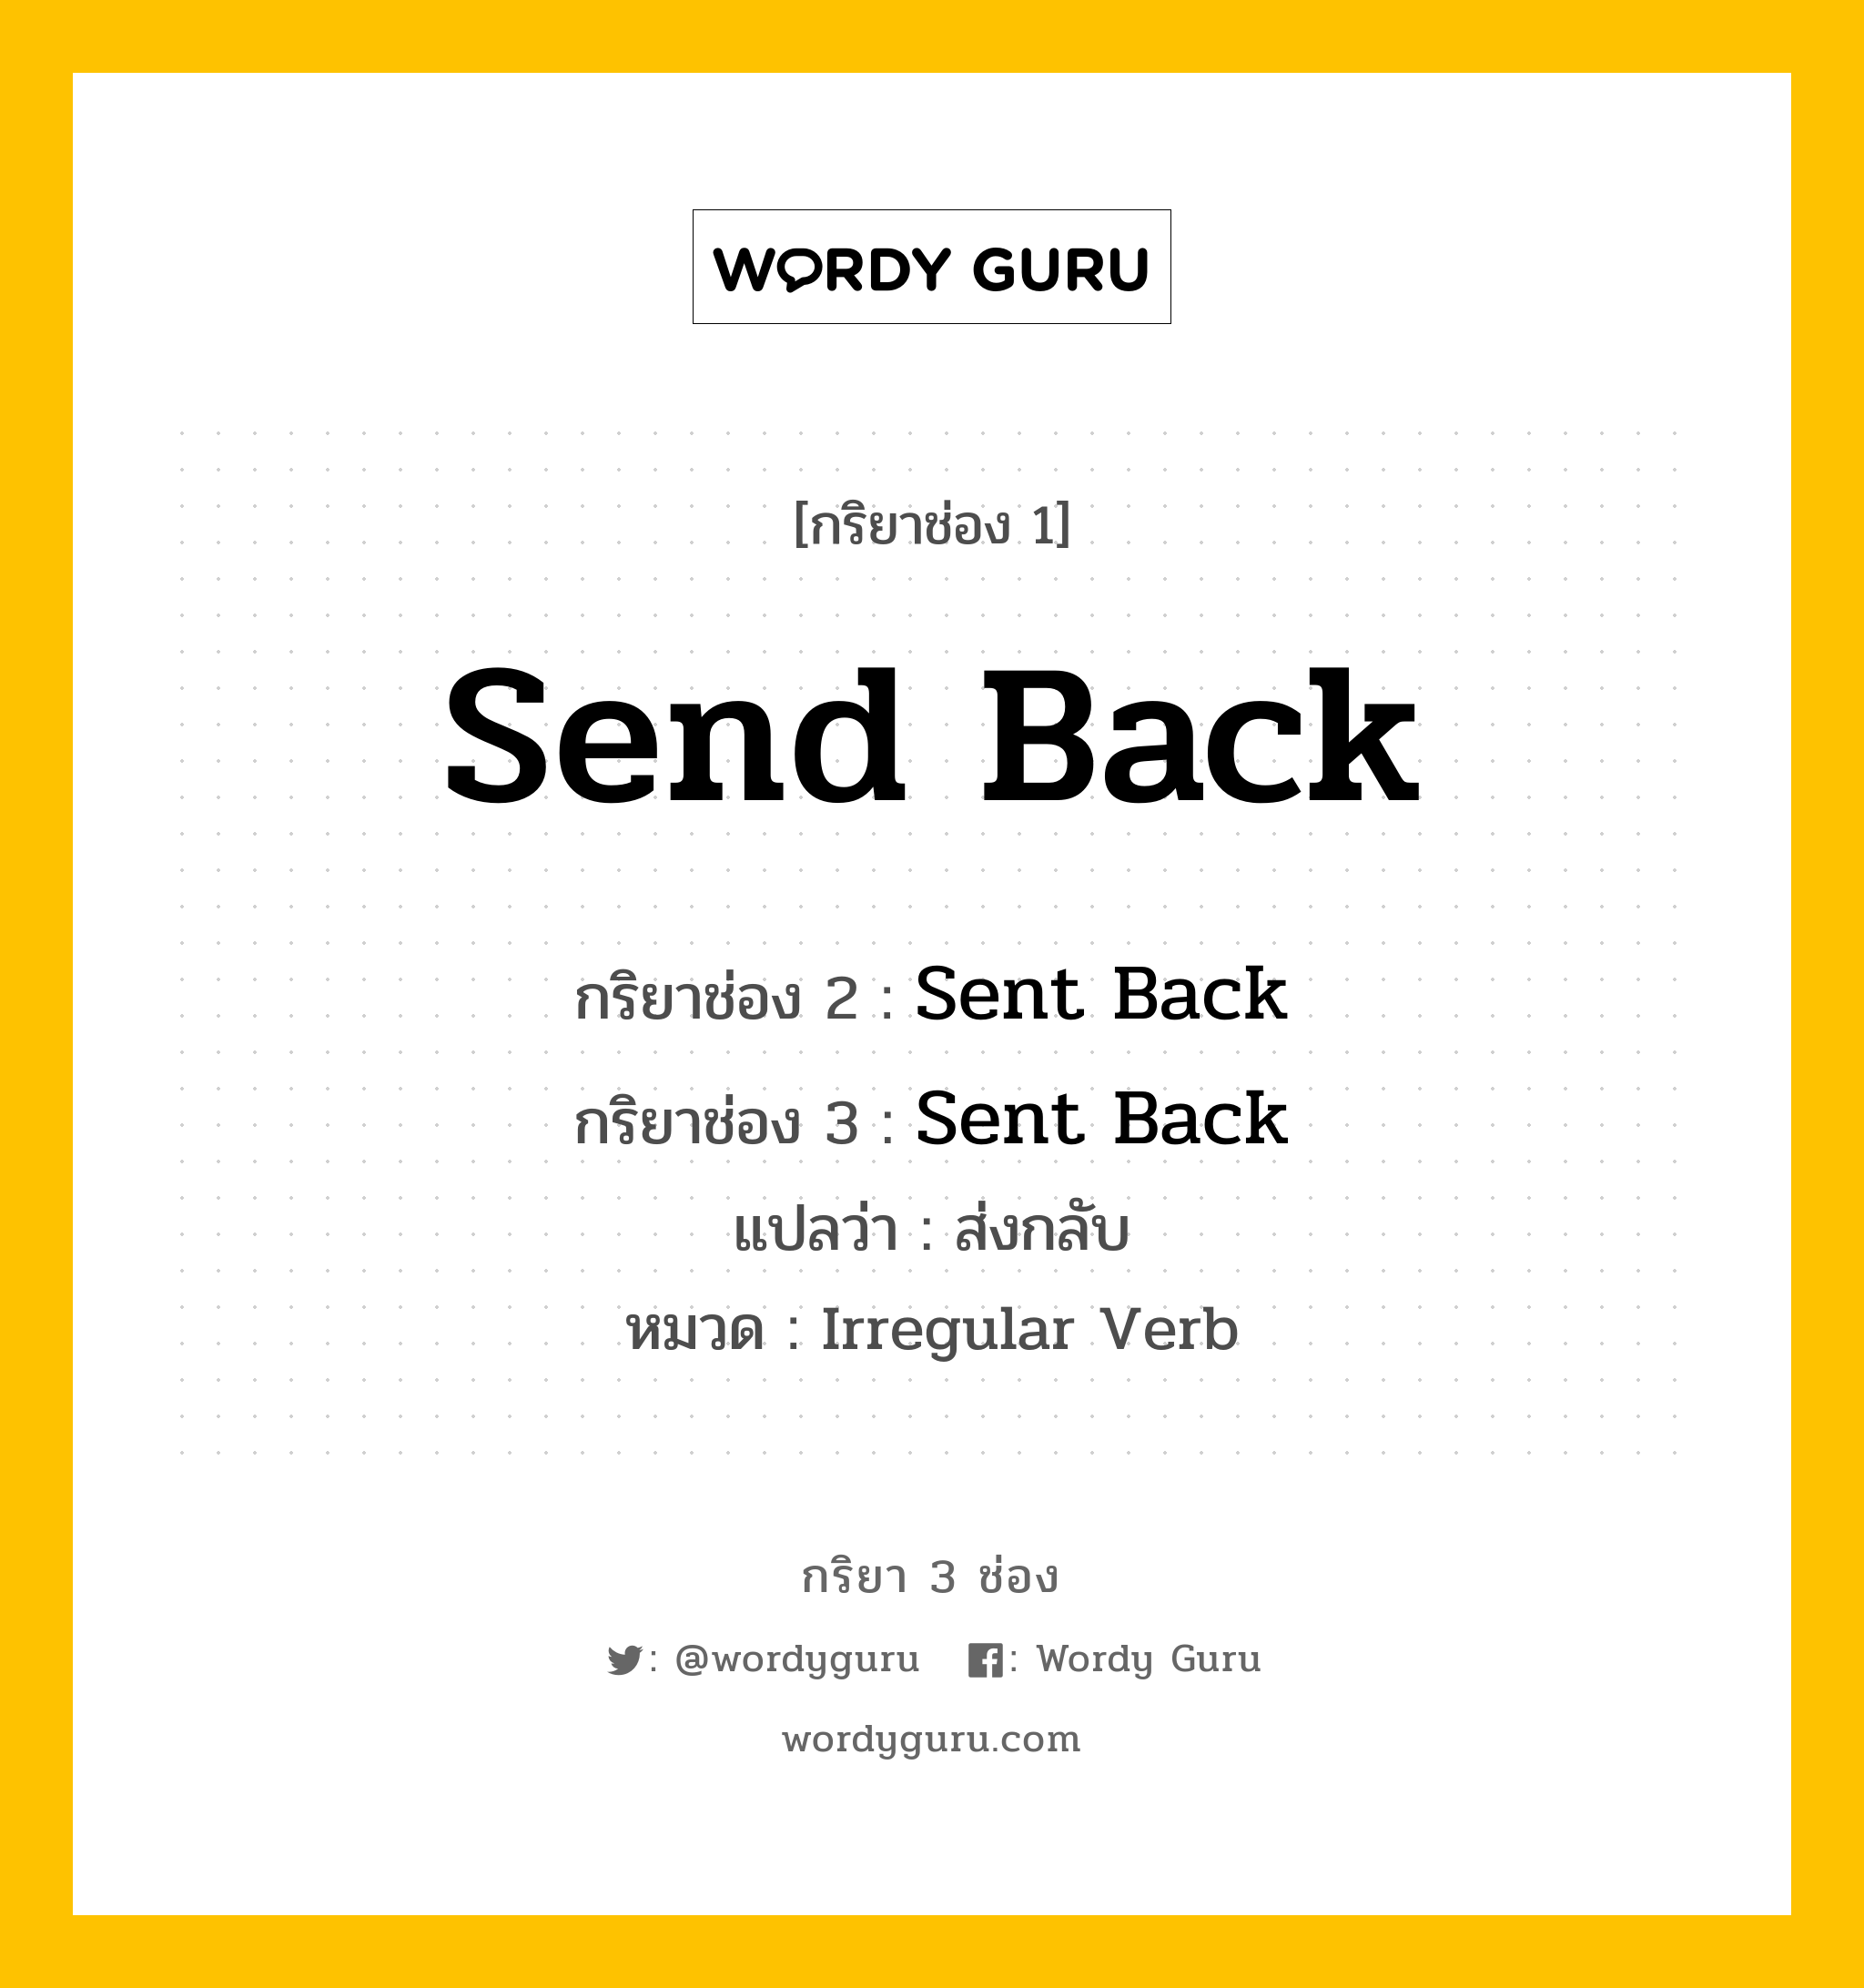 กริยา 3 ช่อง: Send Back ช่อง 2 Send Back ช่อง 3 คืออะไร, กริยาช่อง 1 Send Back กริยาช่อง 2 Sent Back กริยาช่อง 3 Sent Back แปลว่า ส่งกลับ หมวด Irregular Verb หมวด Irregular Verb